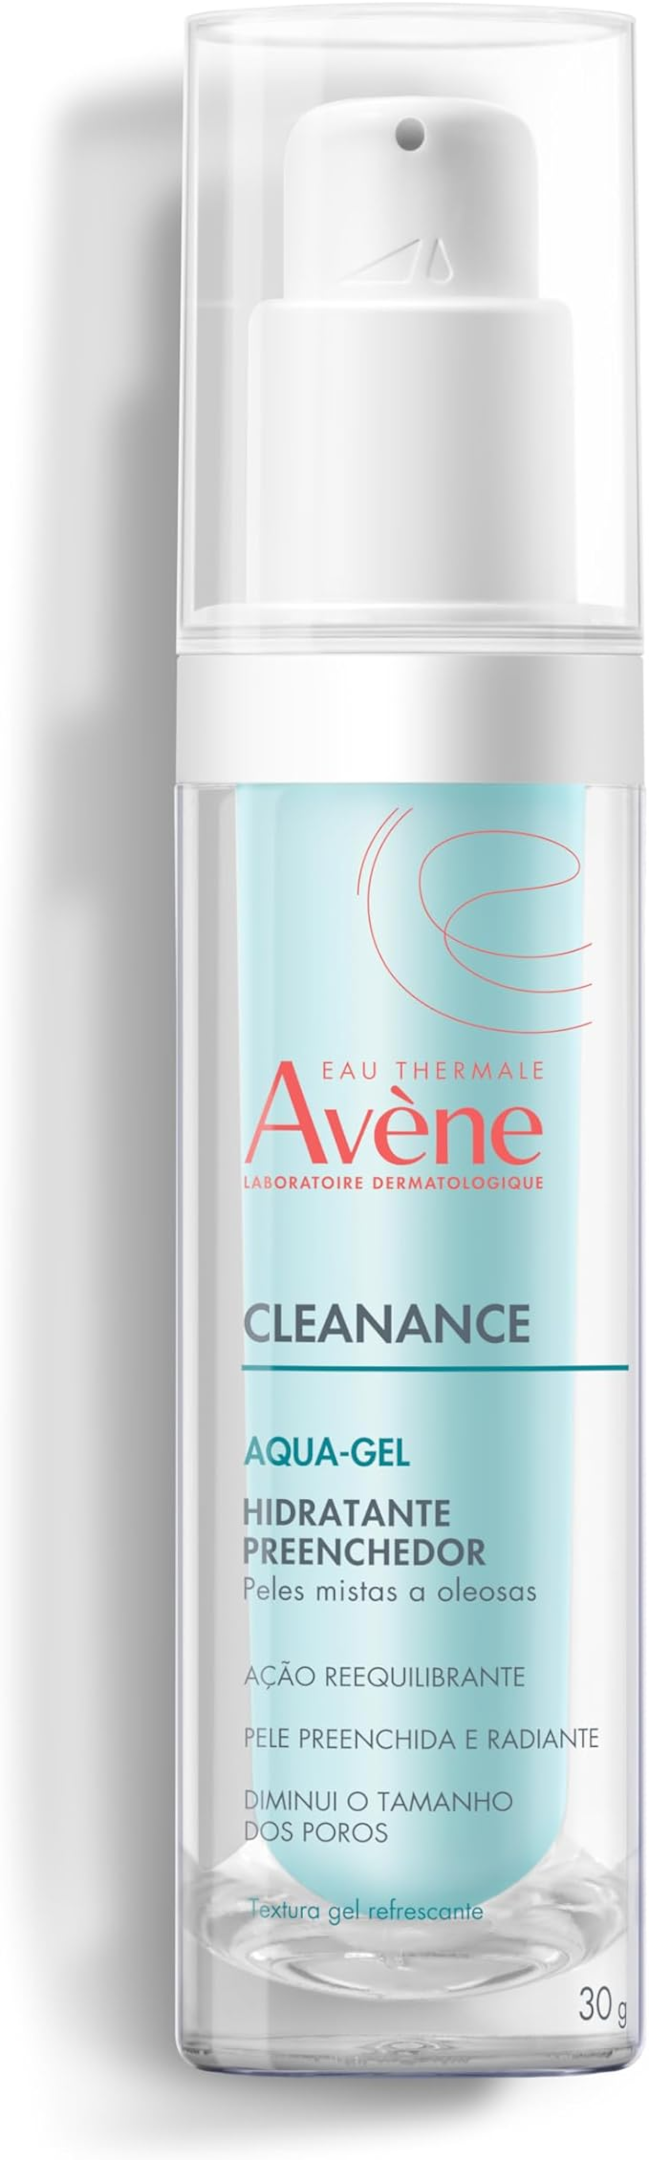 Gel hidratante facial Cleanance da Avéne. Fonte da imagem: site oficial da marca. 